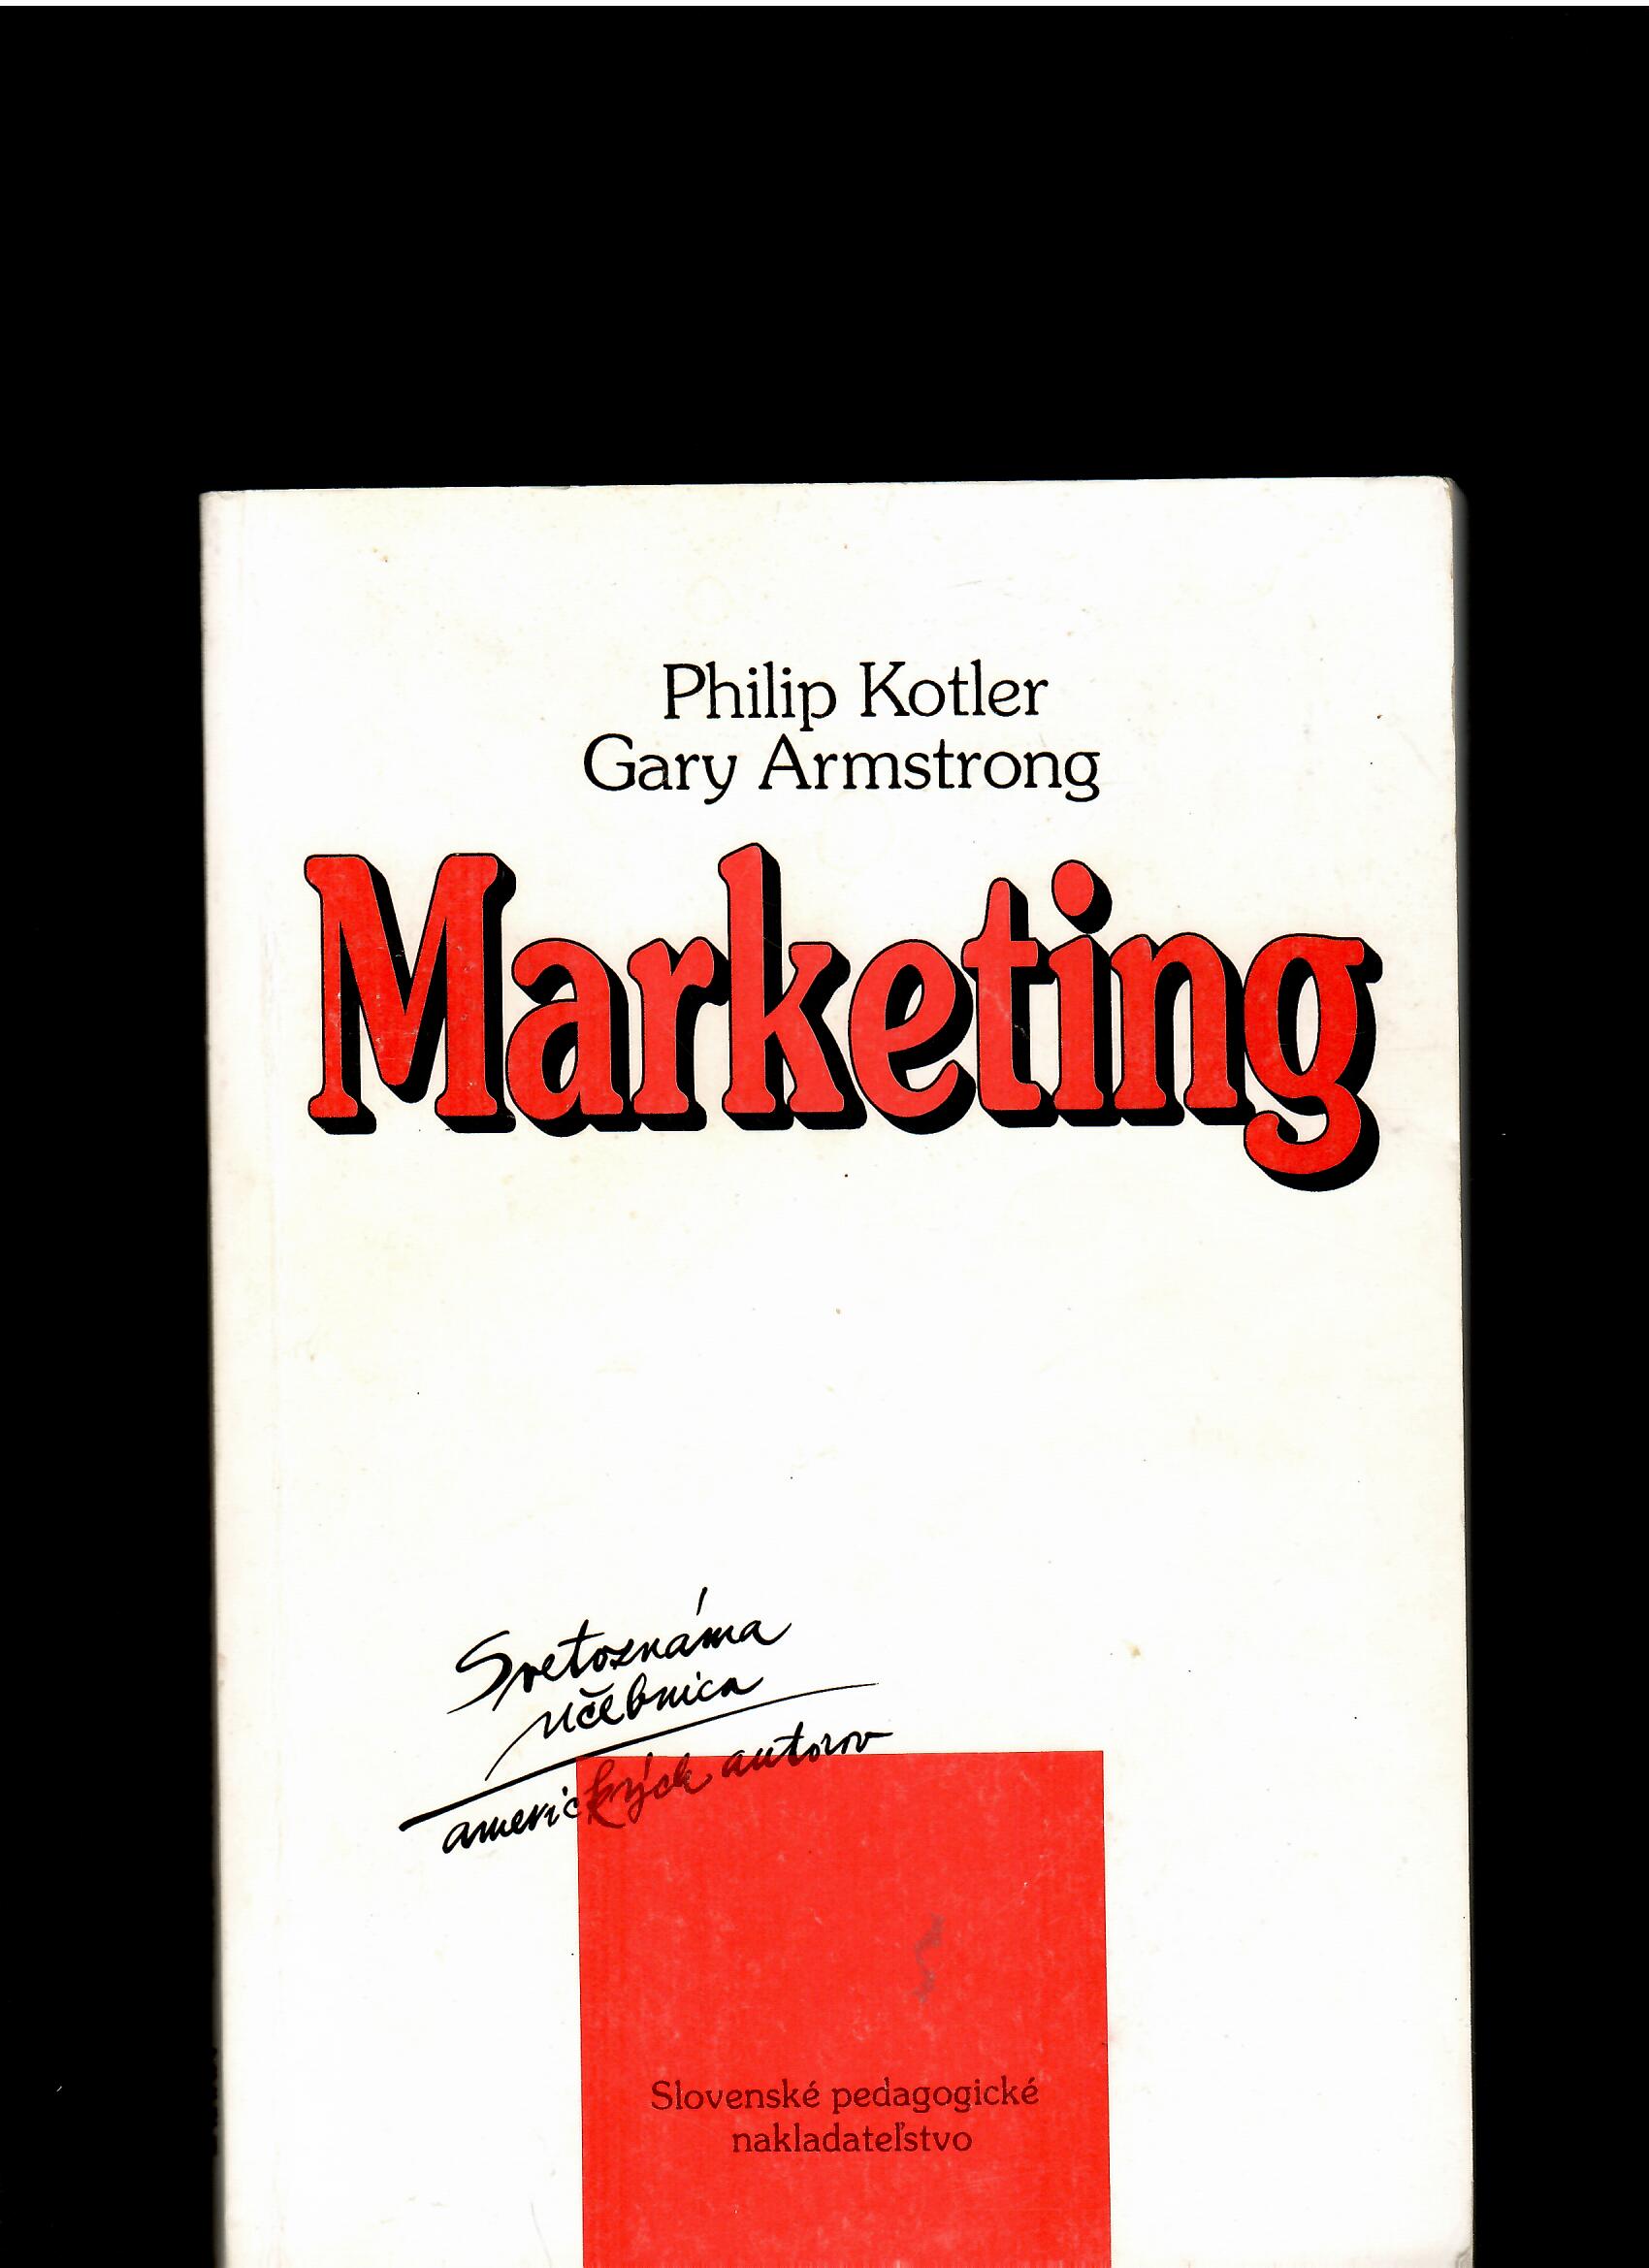 Philip Kotler, Gary Armstrong: Marketing /1992/